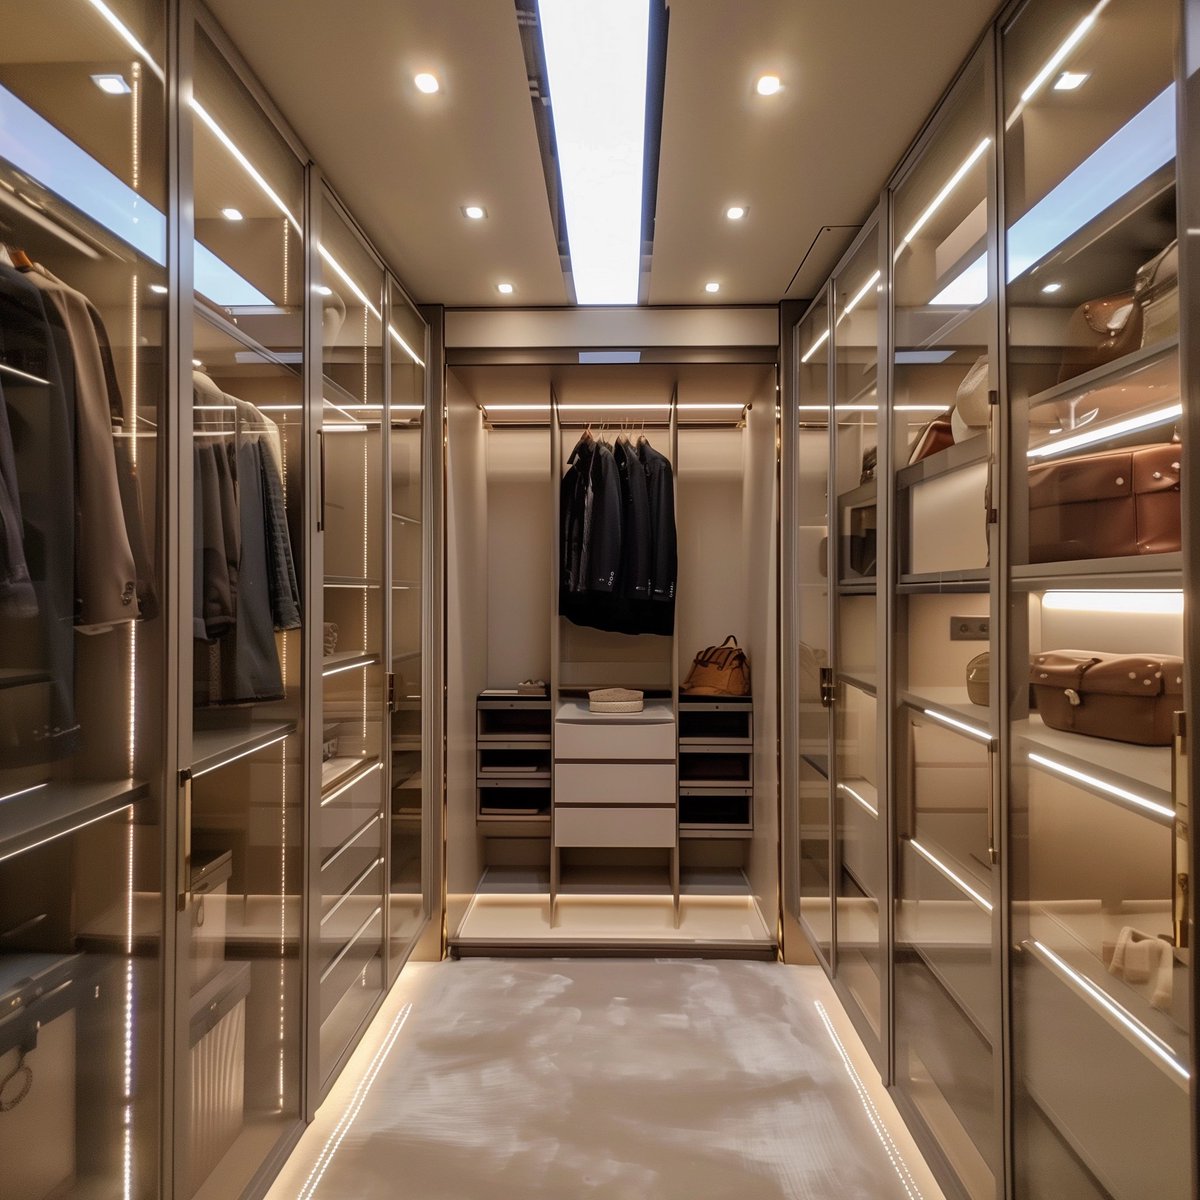 Luxurious Walk-In Closet
#modernluxury #walkincloset #interiordesign #closetorganization